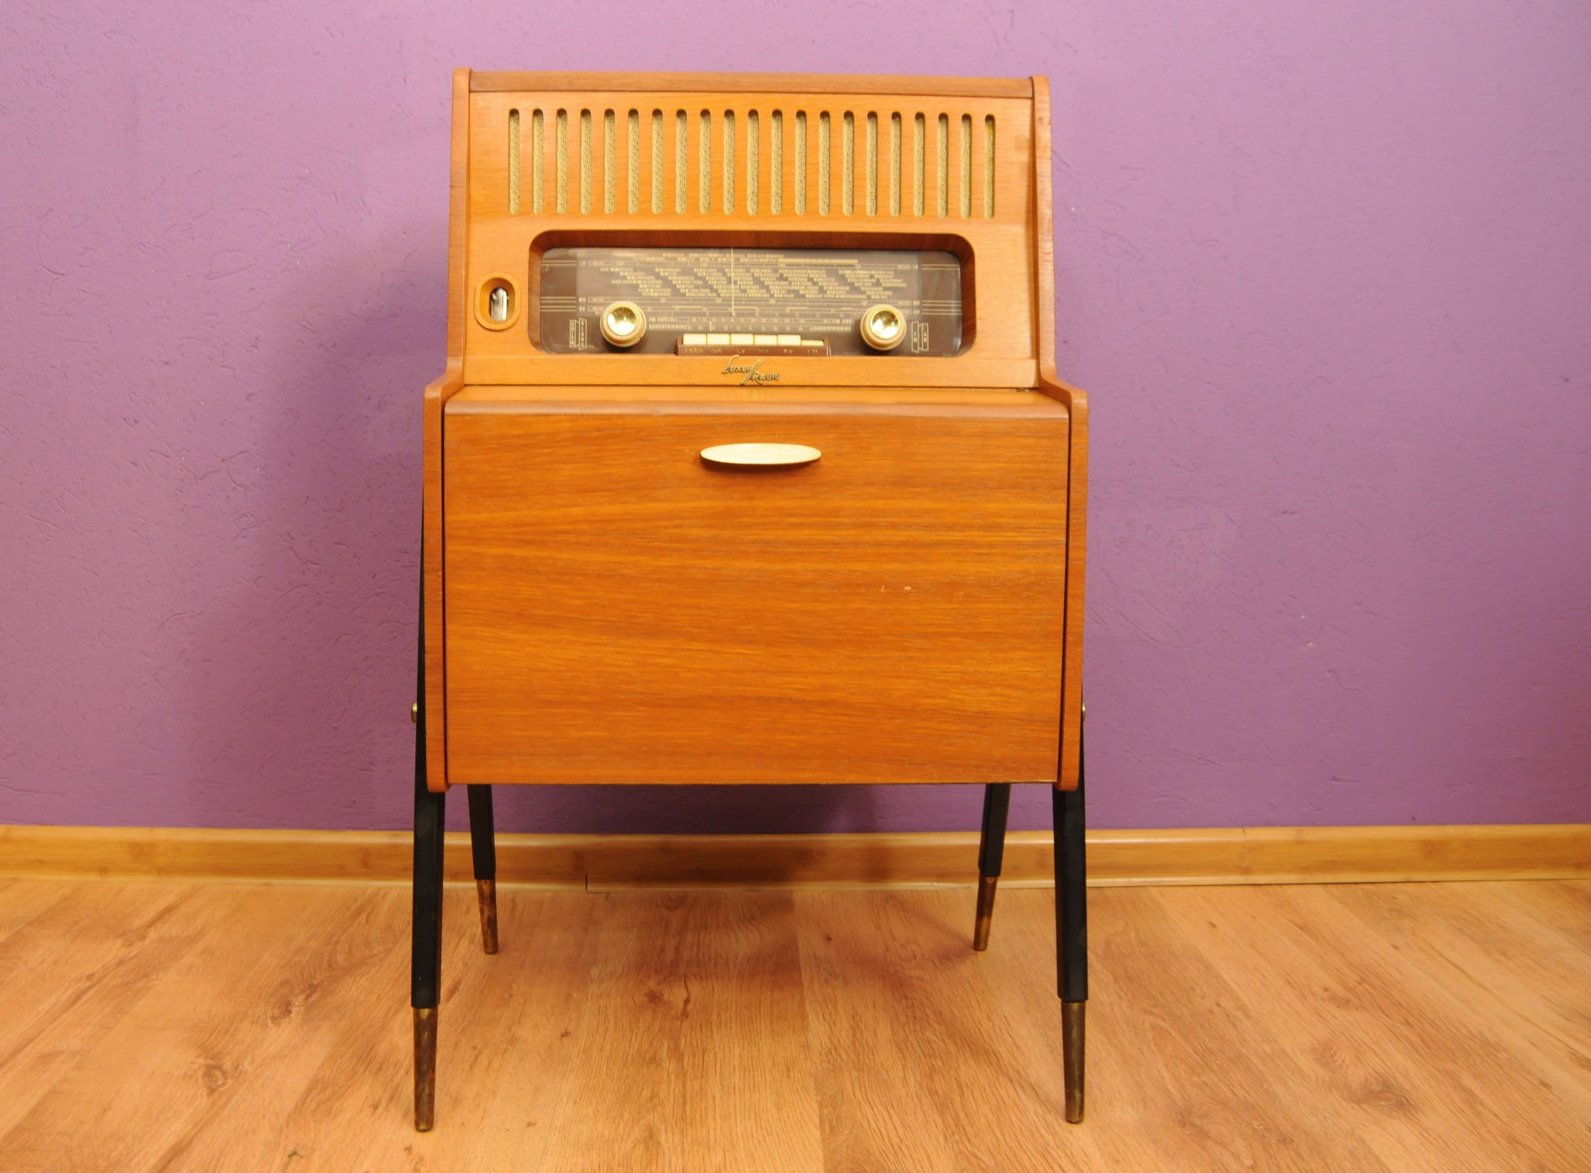 Vintage Radio Sale 55